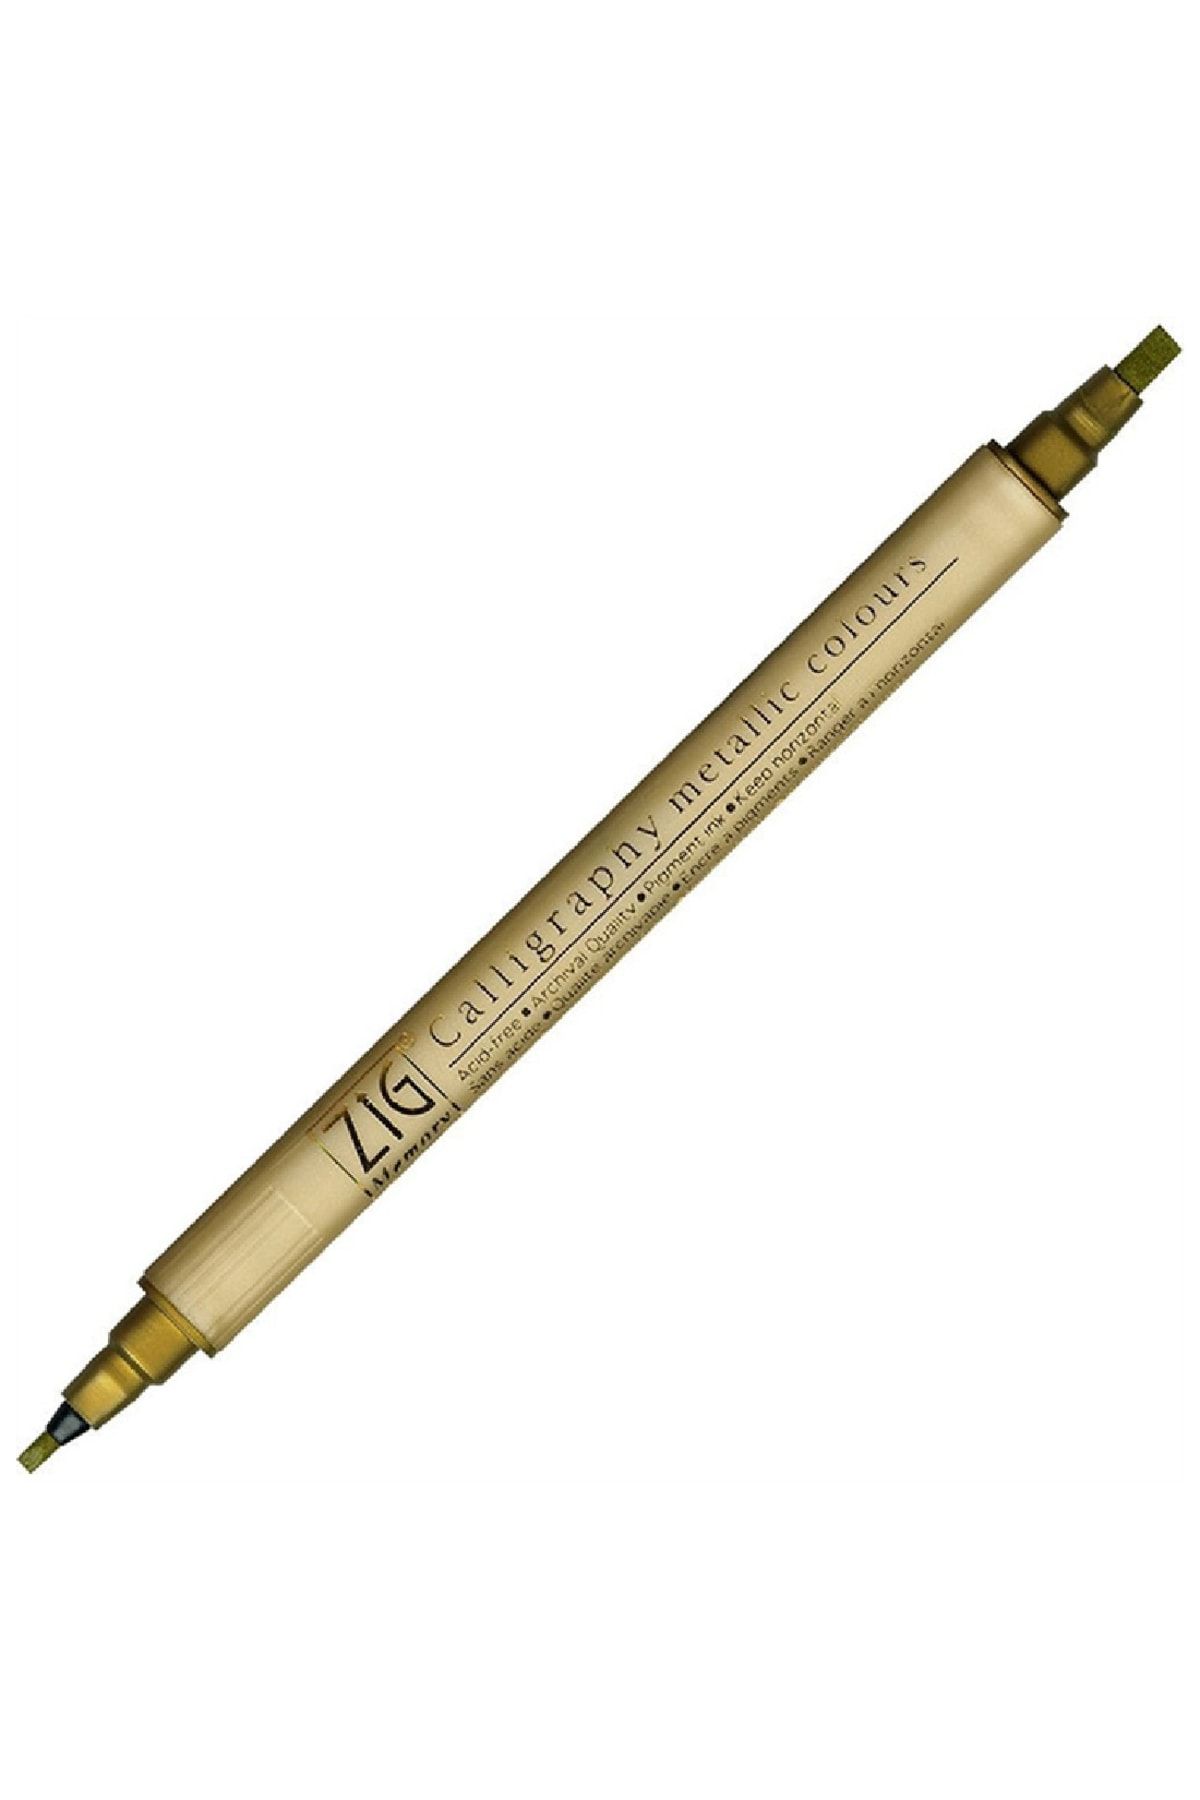 Zig Çift Uçlu Yaldızlı Kaligrafi Kalemi 2 mm + 3.5 mm 101 Metallic Gold